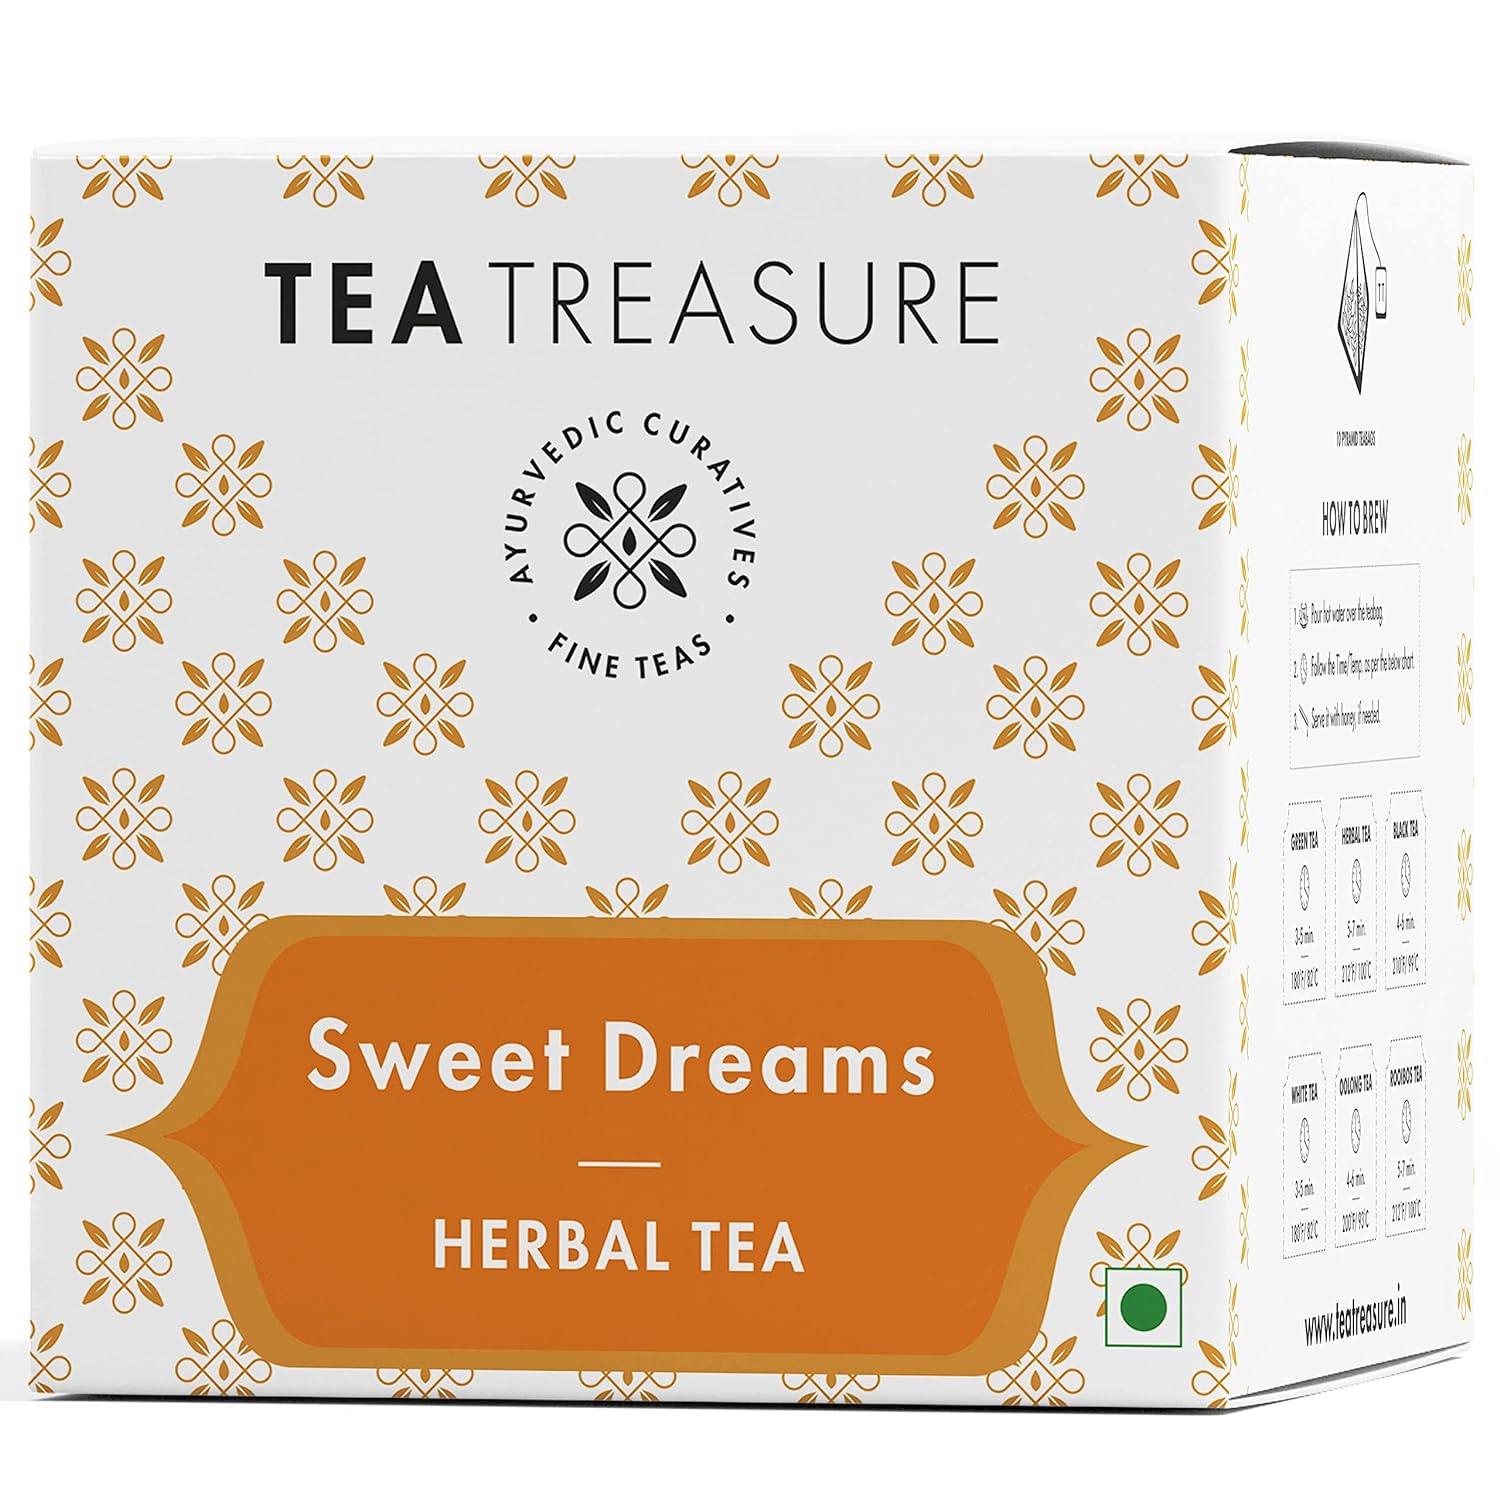 Sweet Dreams Tea - Sorich